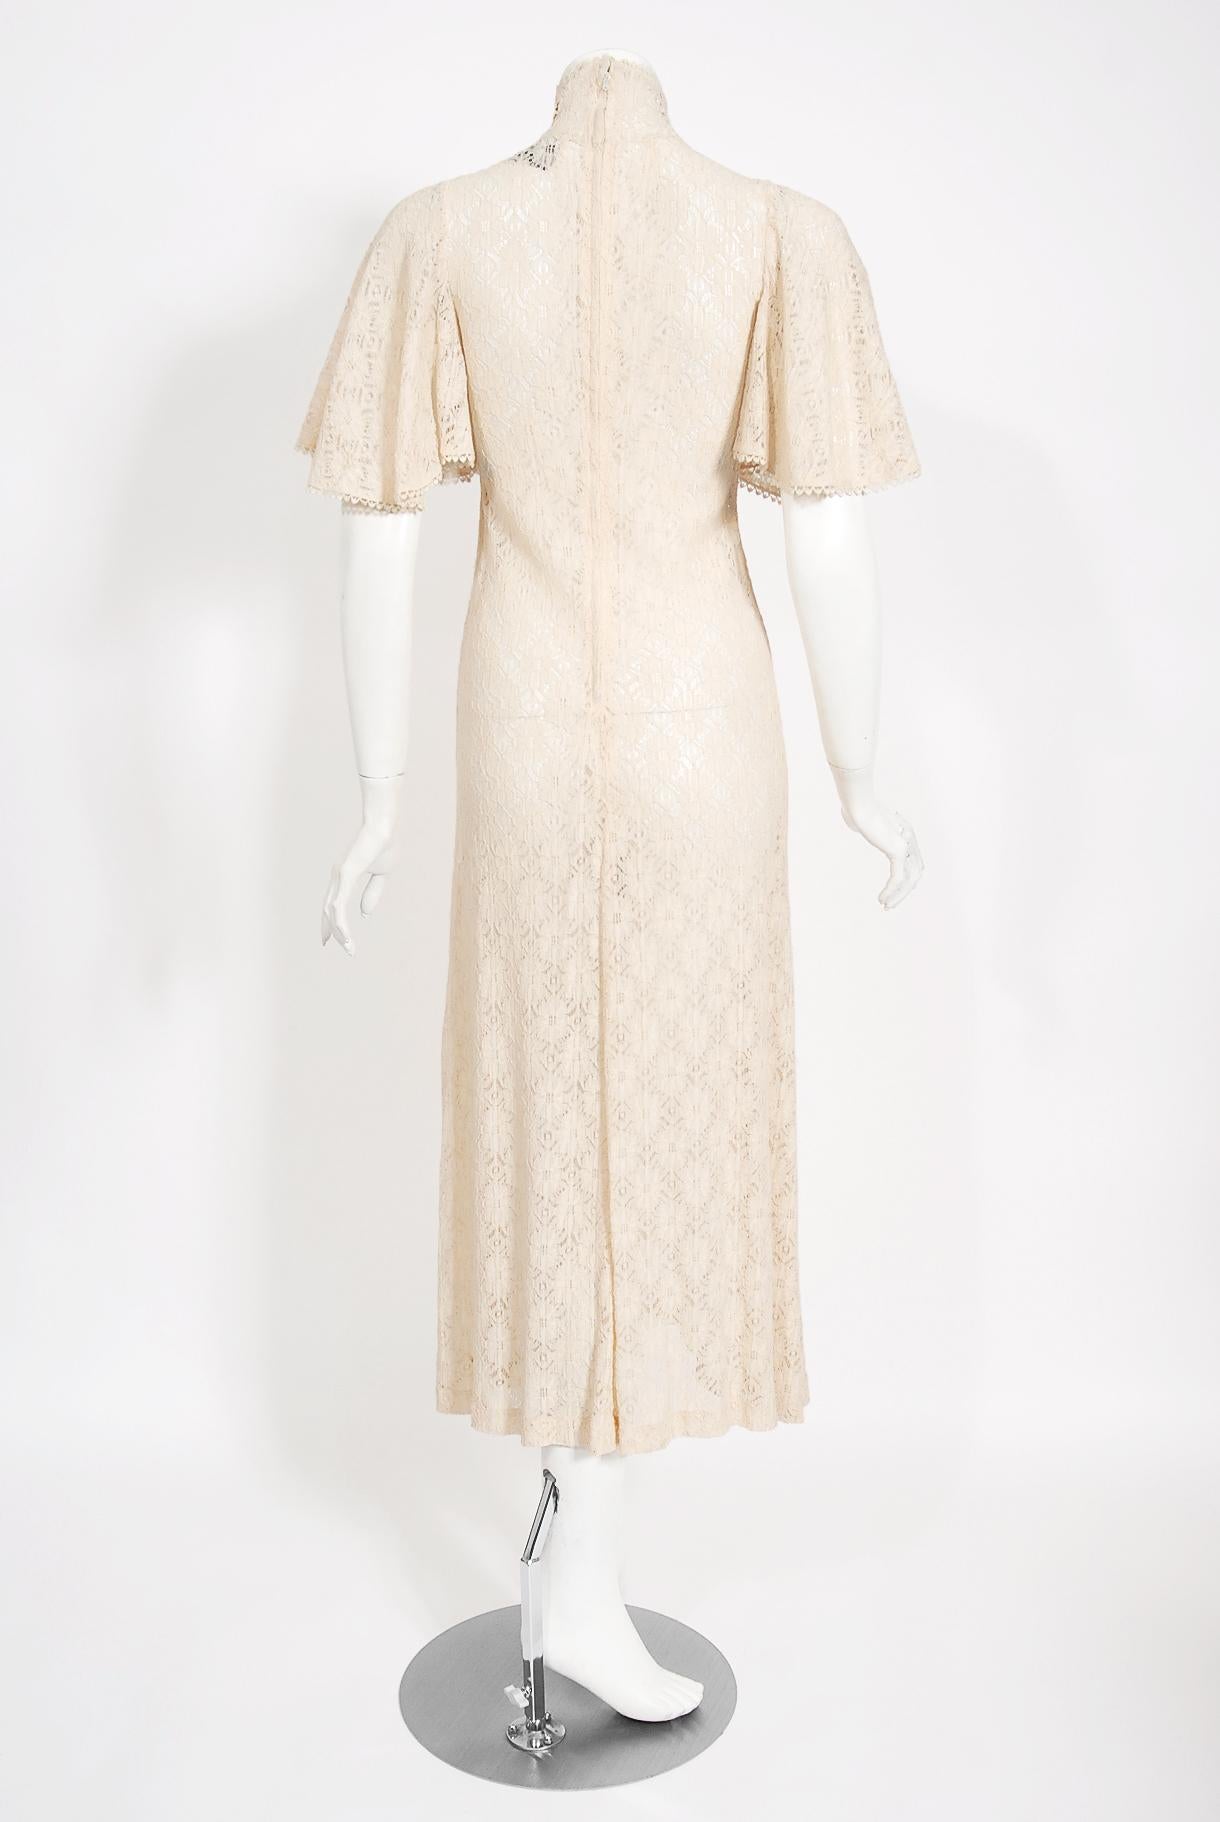 Buy Biba Girls Nylon Dress (KW4069_Beg_7.5) at Amazon.in